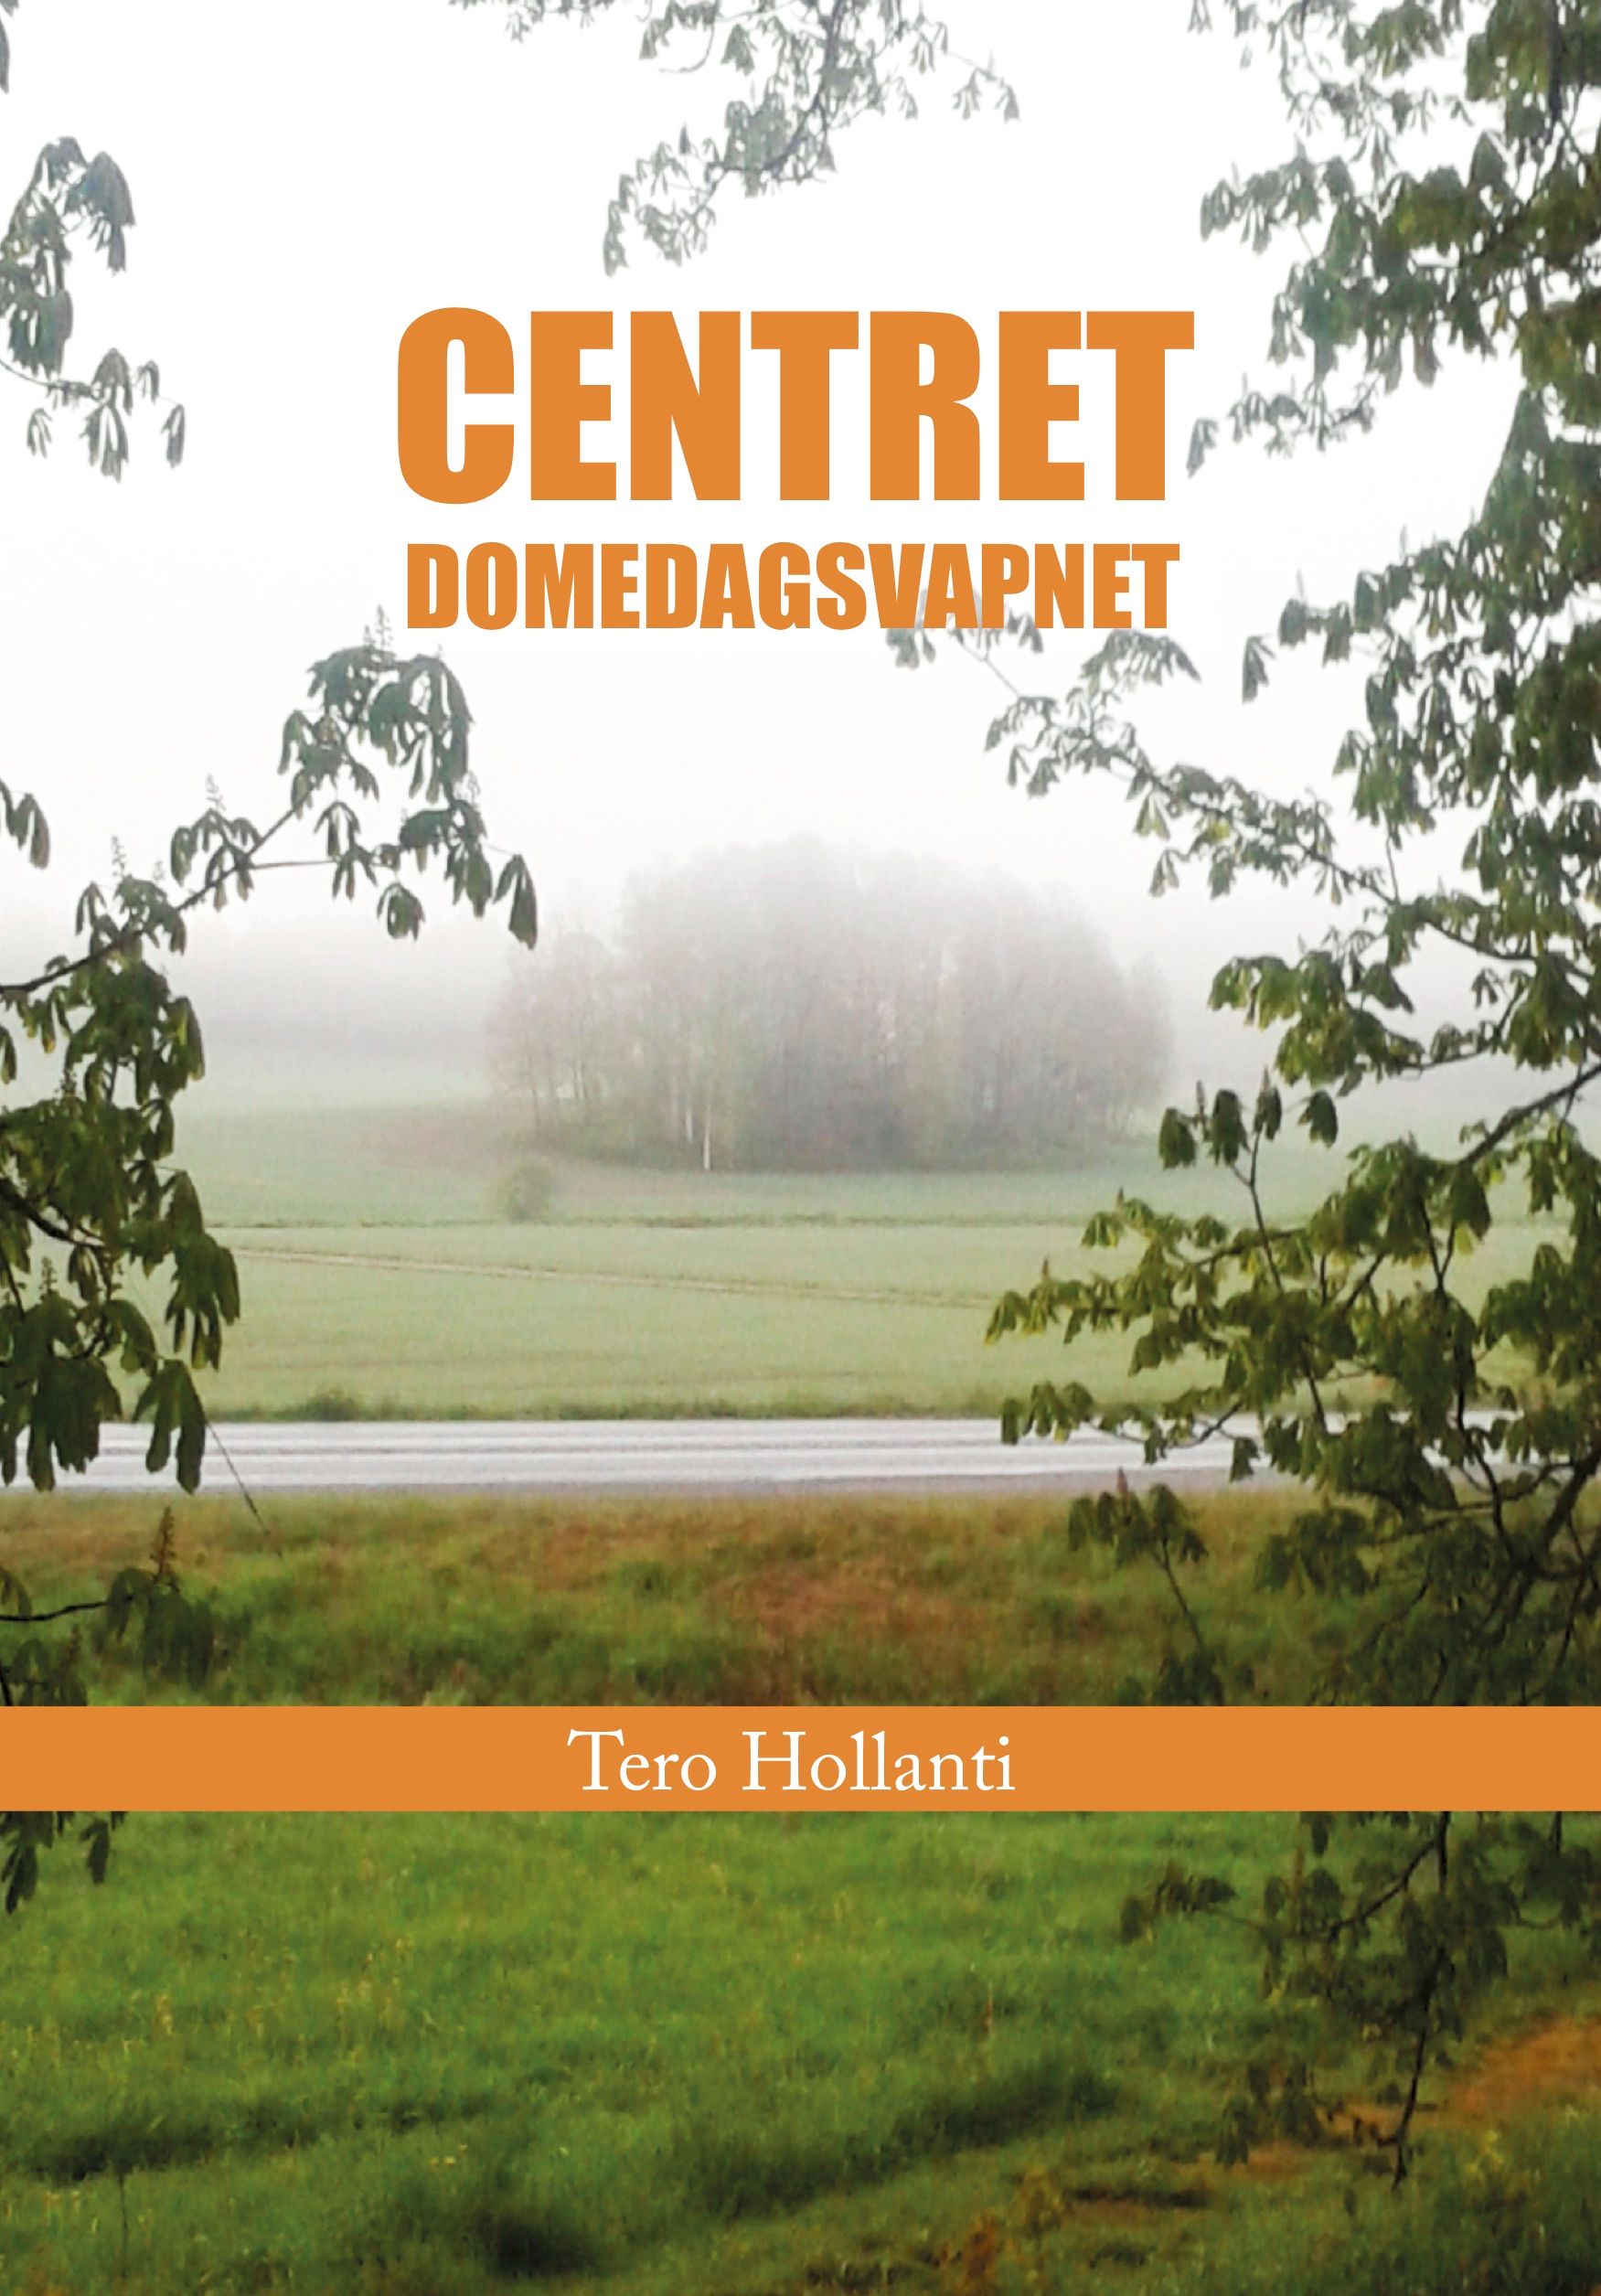 Centret Domedagsvapnet, e-bog af Tero Hollanti